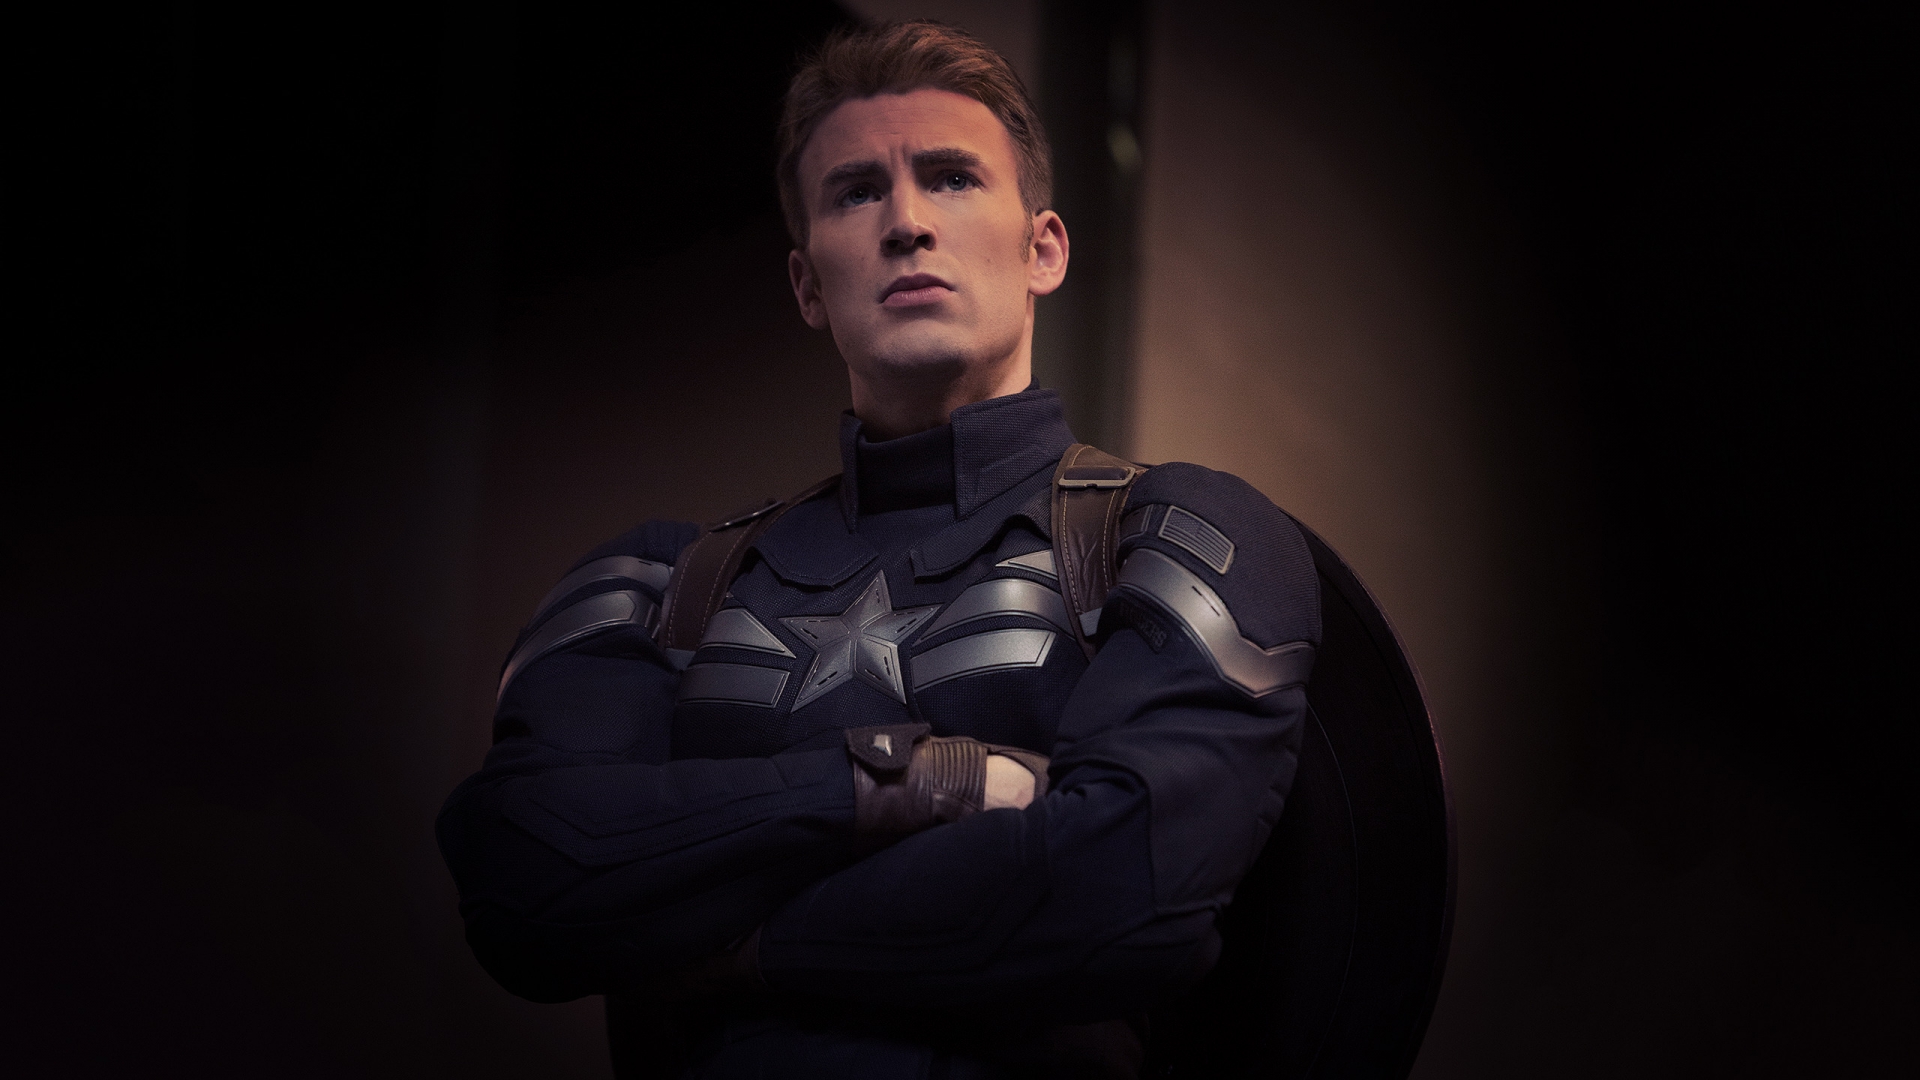 Captain America Marvel for 1920 x 1080 HDTV 1080p resolution